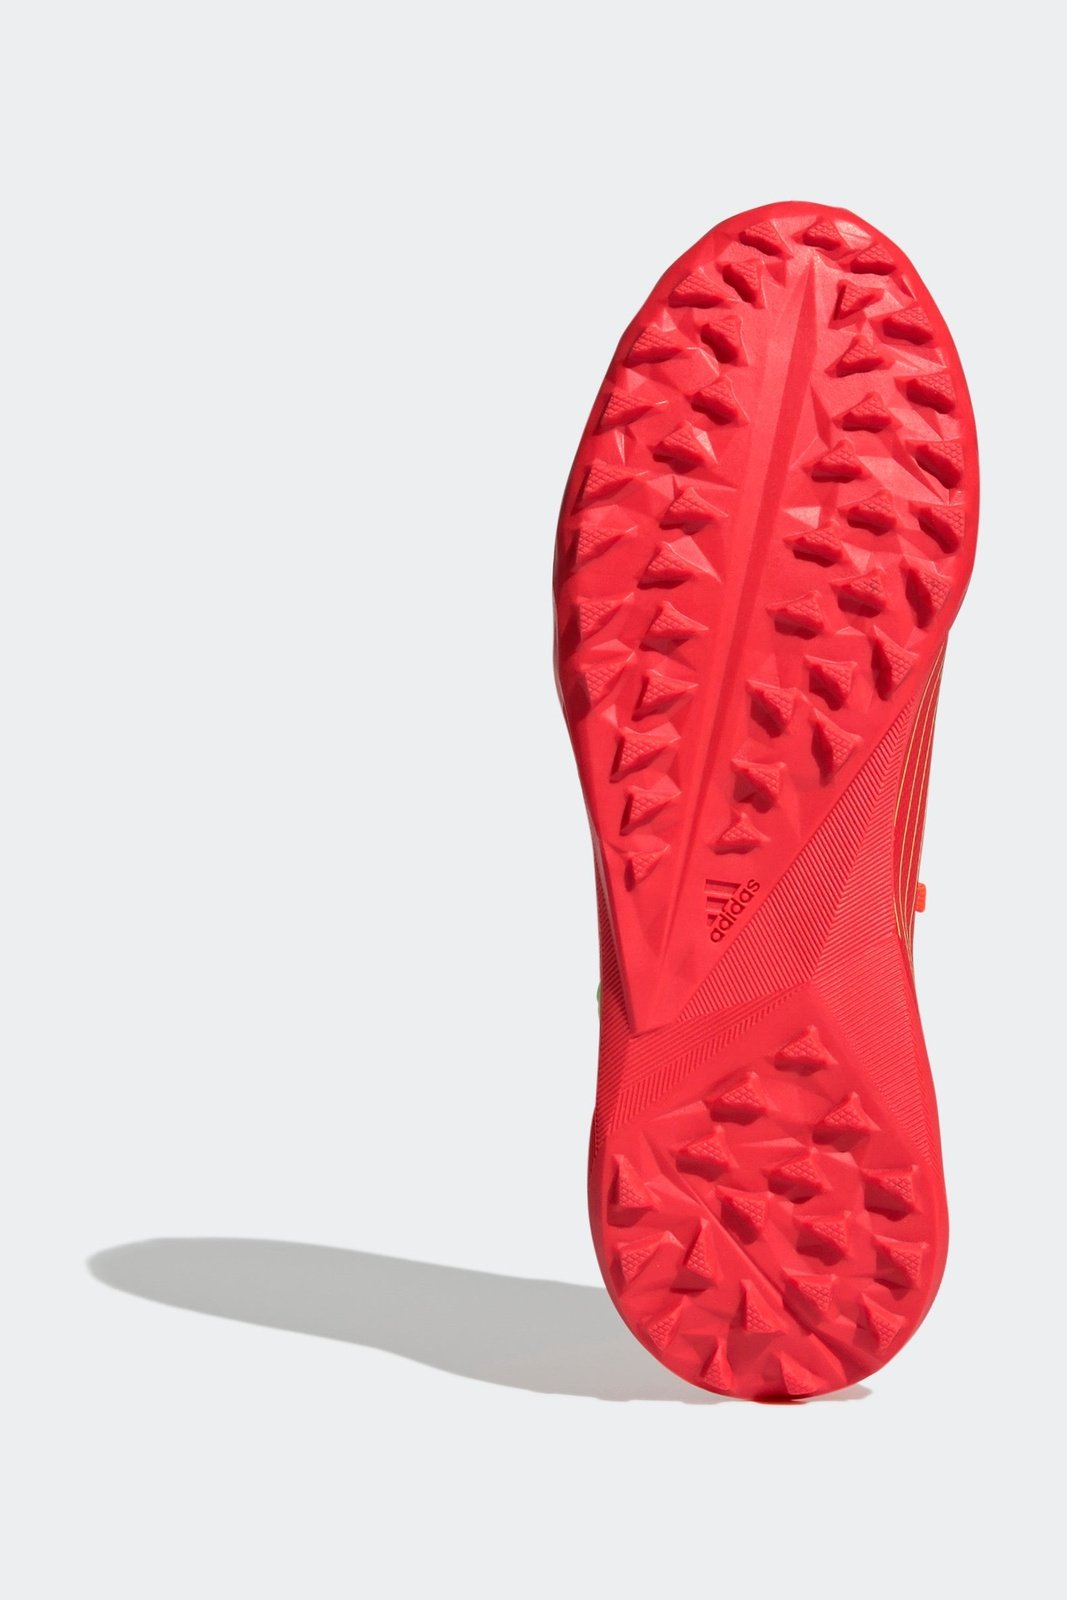 נעלי קטרגל לילדים PREDATOR EDGE.3 TF J בצבע אדום וירוק